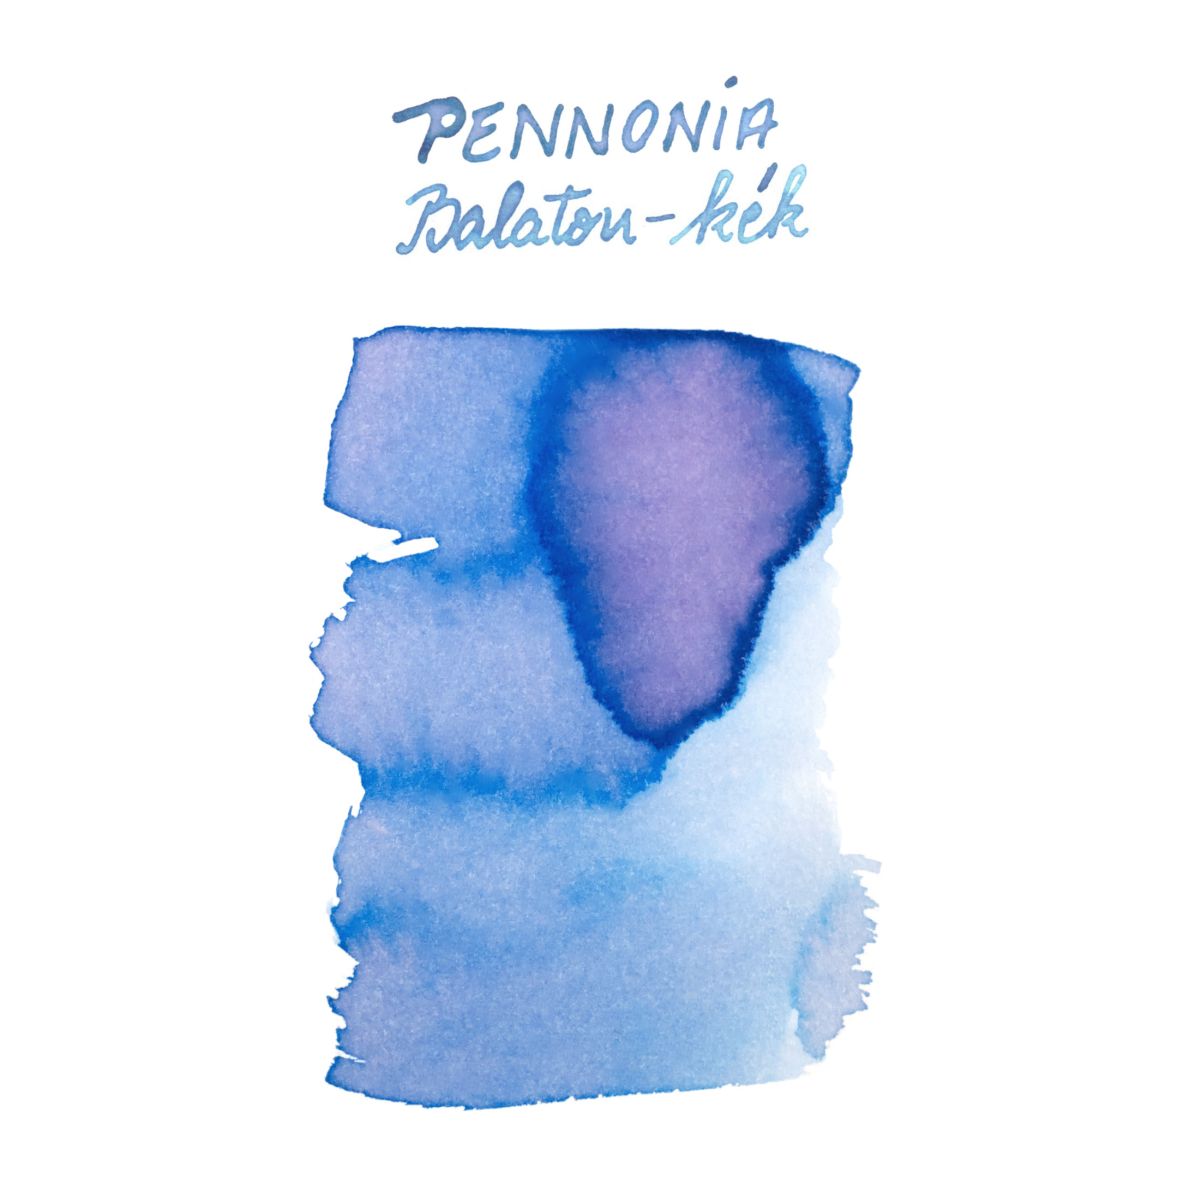 Pennonia Balaton-kek